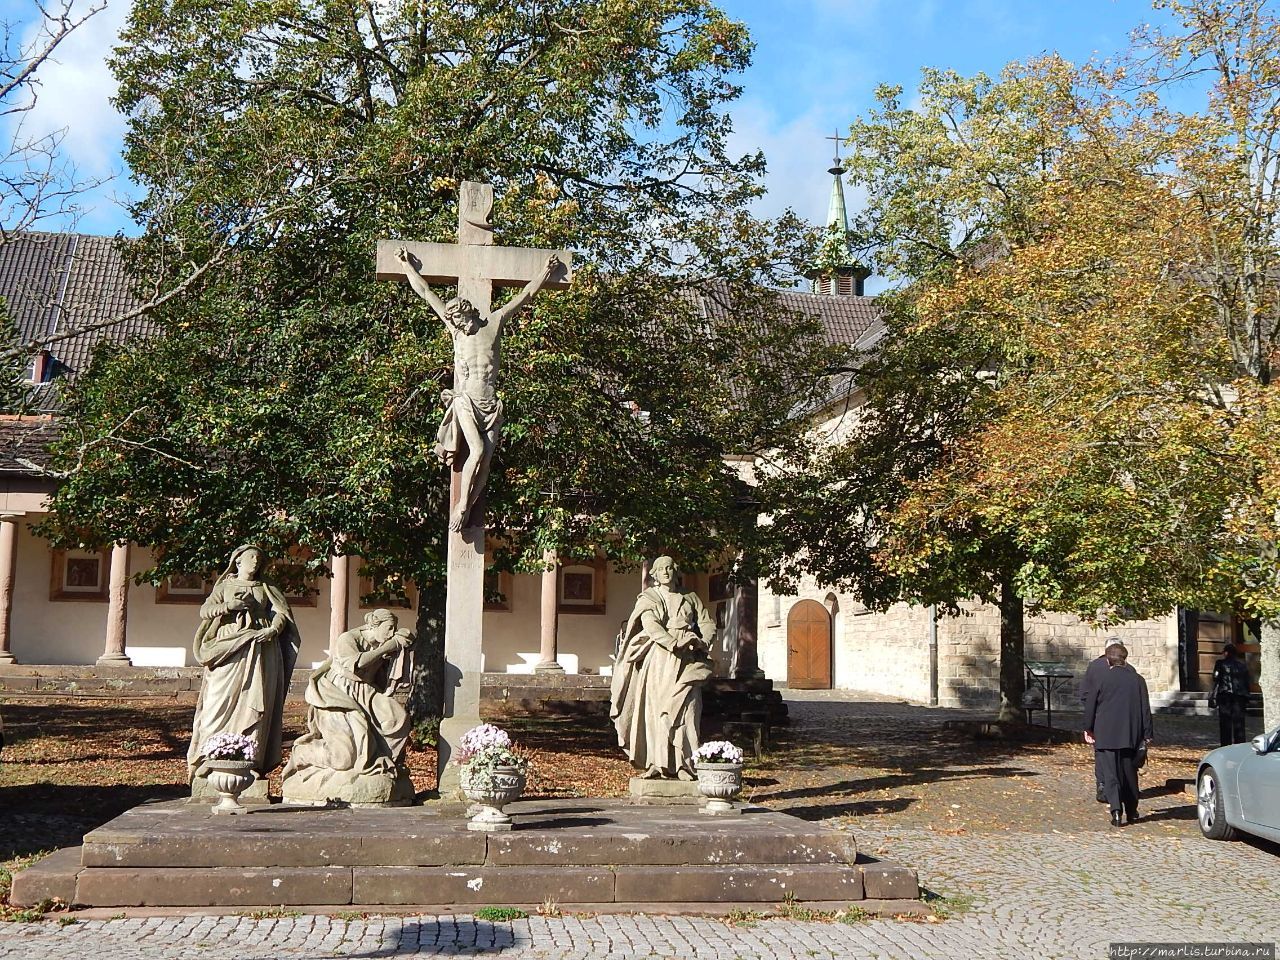 Скульптурная группа Страсти христовы была создана одновременно с капеллой Святого креста (1662), отреставрирована в начале XX века Блискастель, Германия